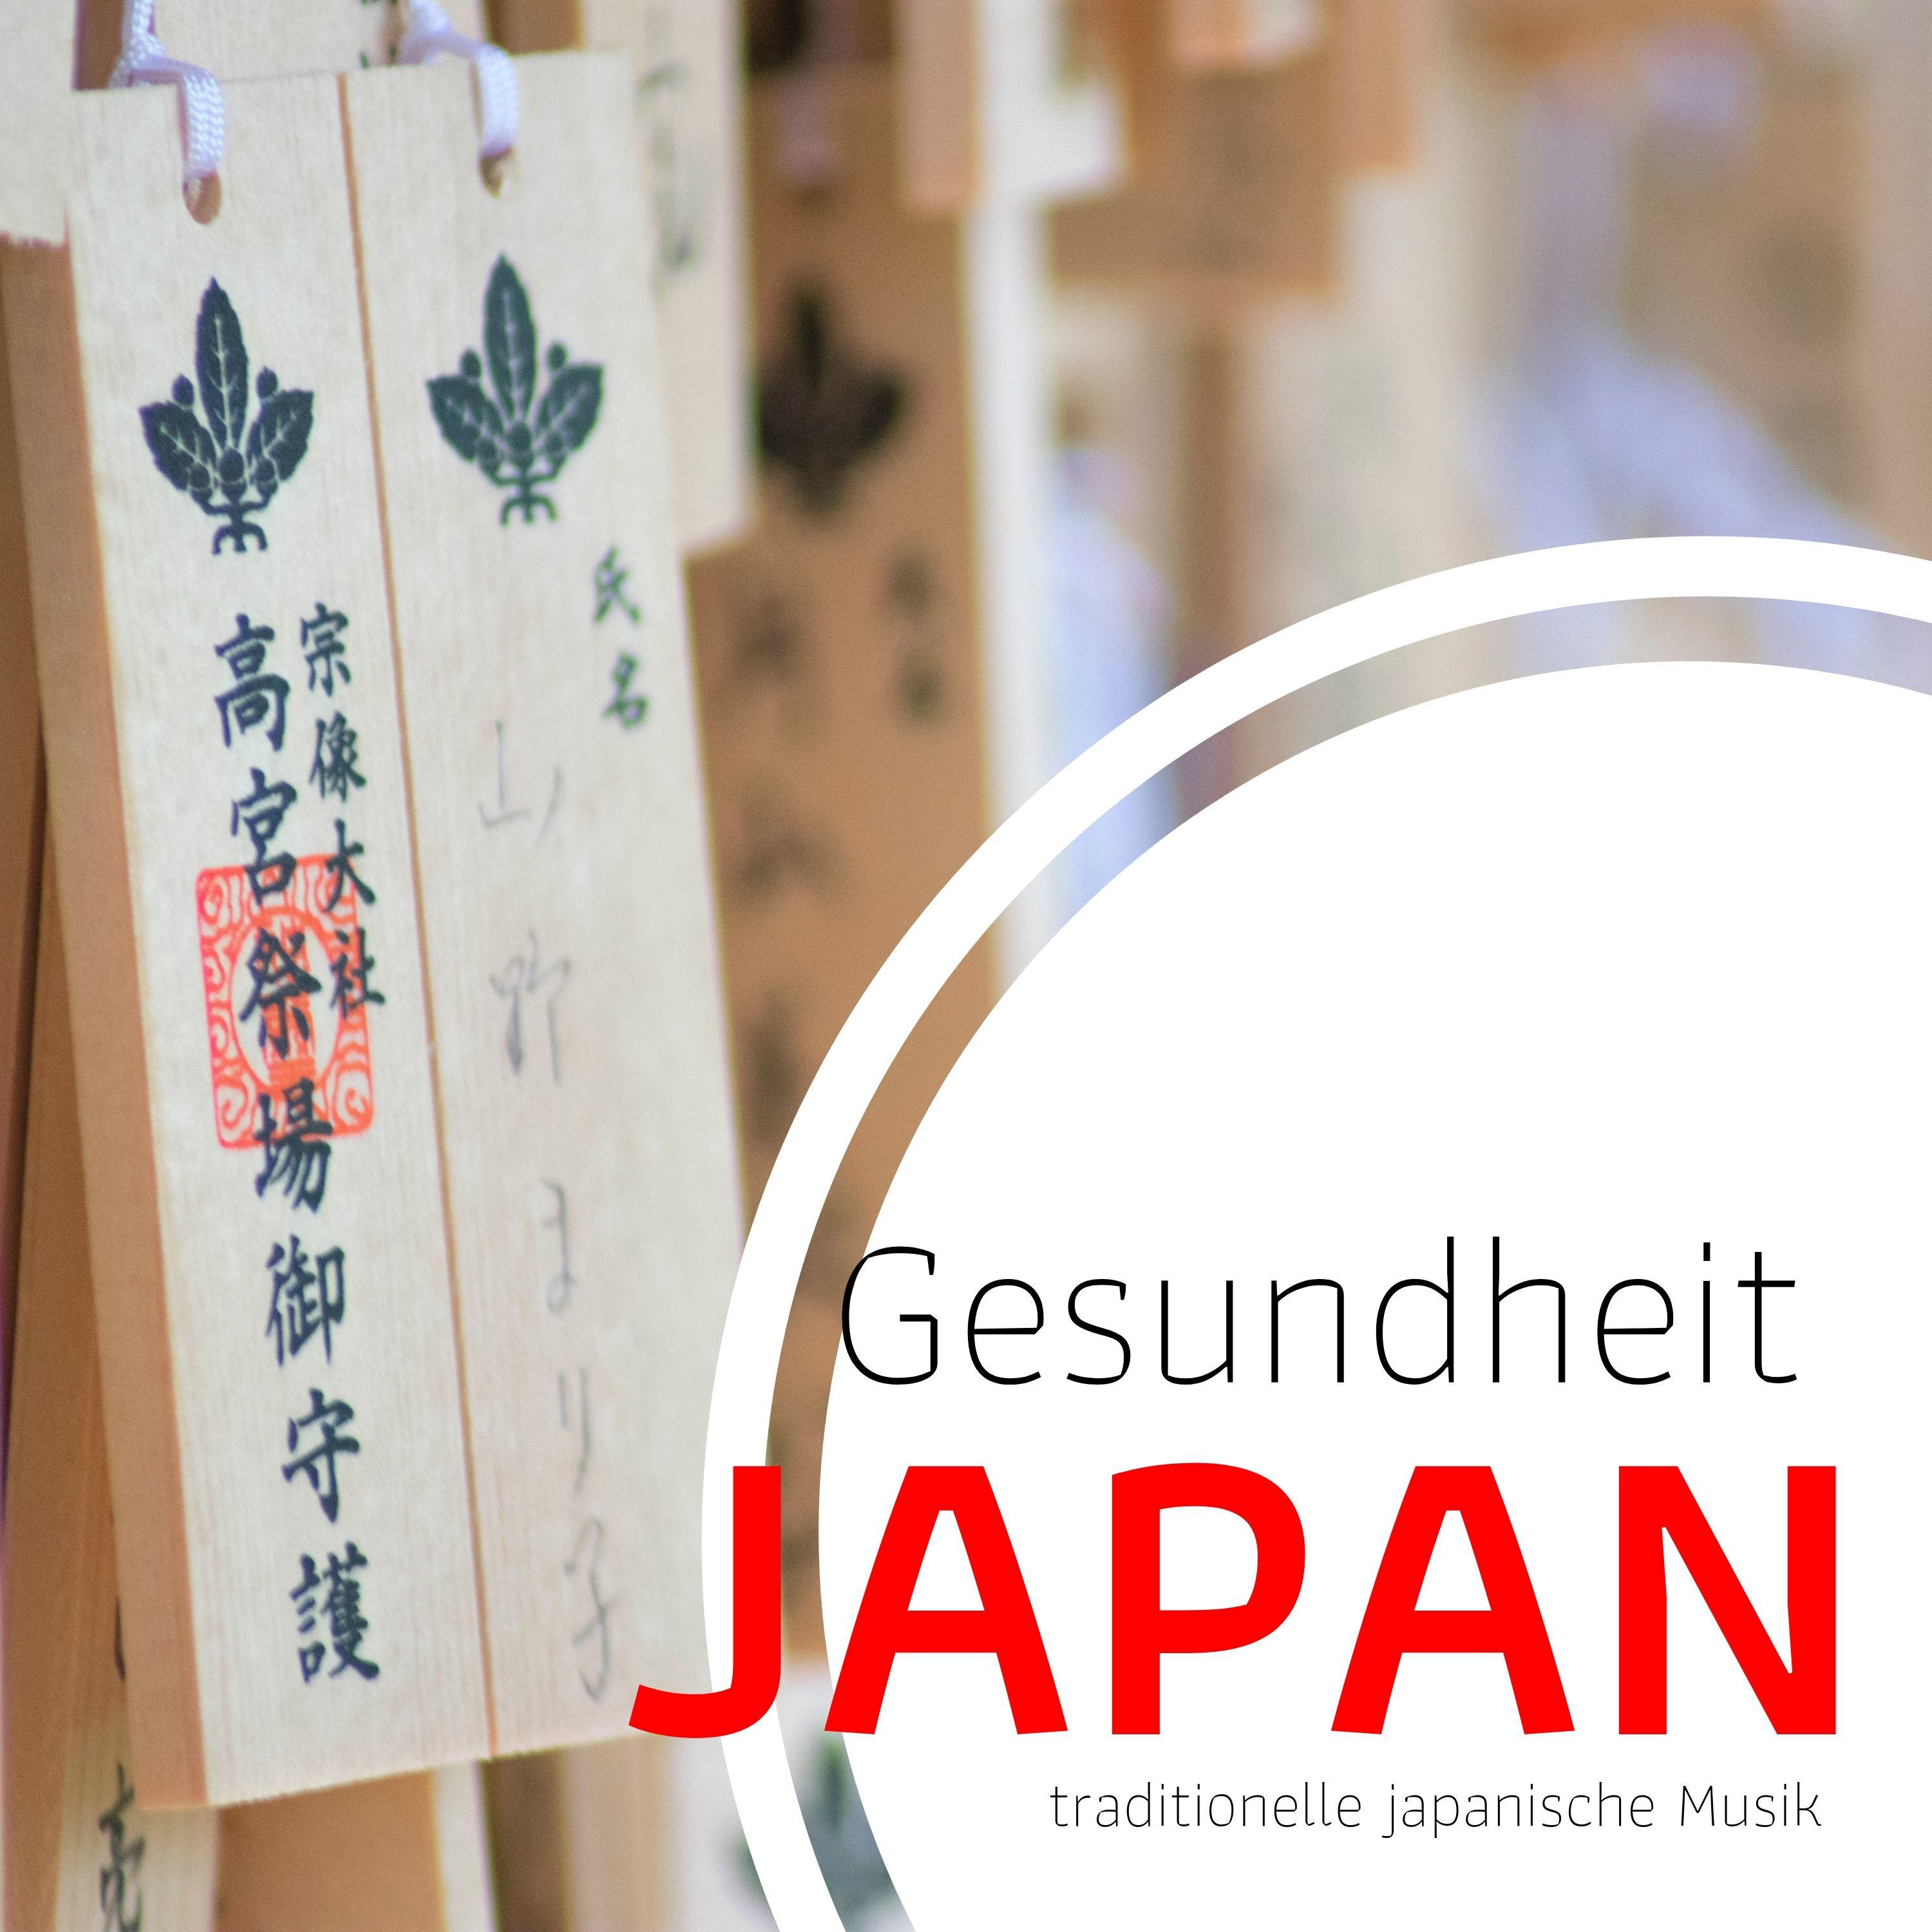 Gesundheit Japan: traditionelle japanische Musik